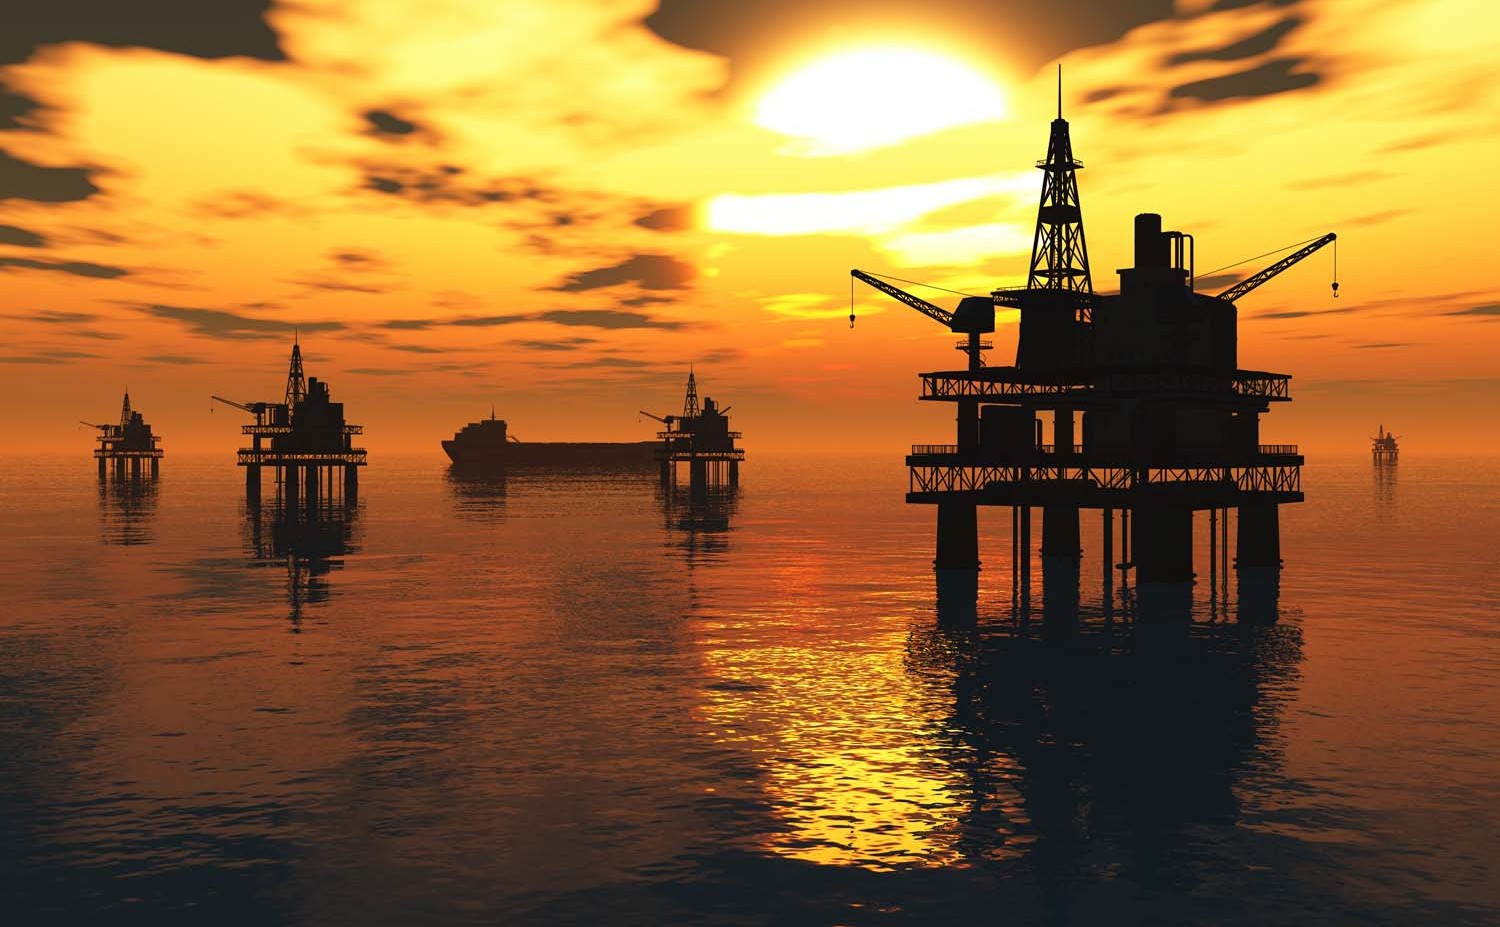 BP: Производство нефти на АЧГ достигло 500 миллионов тонн